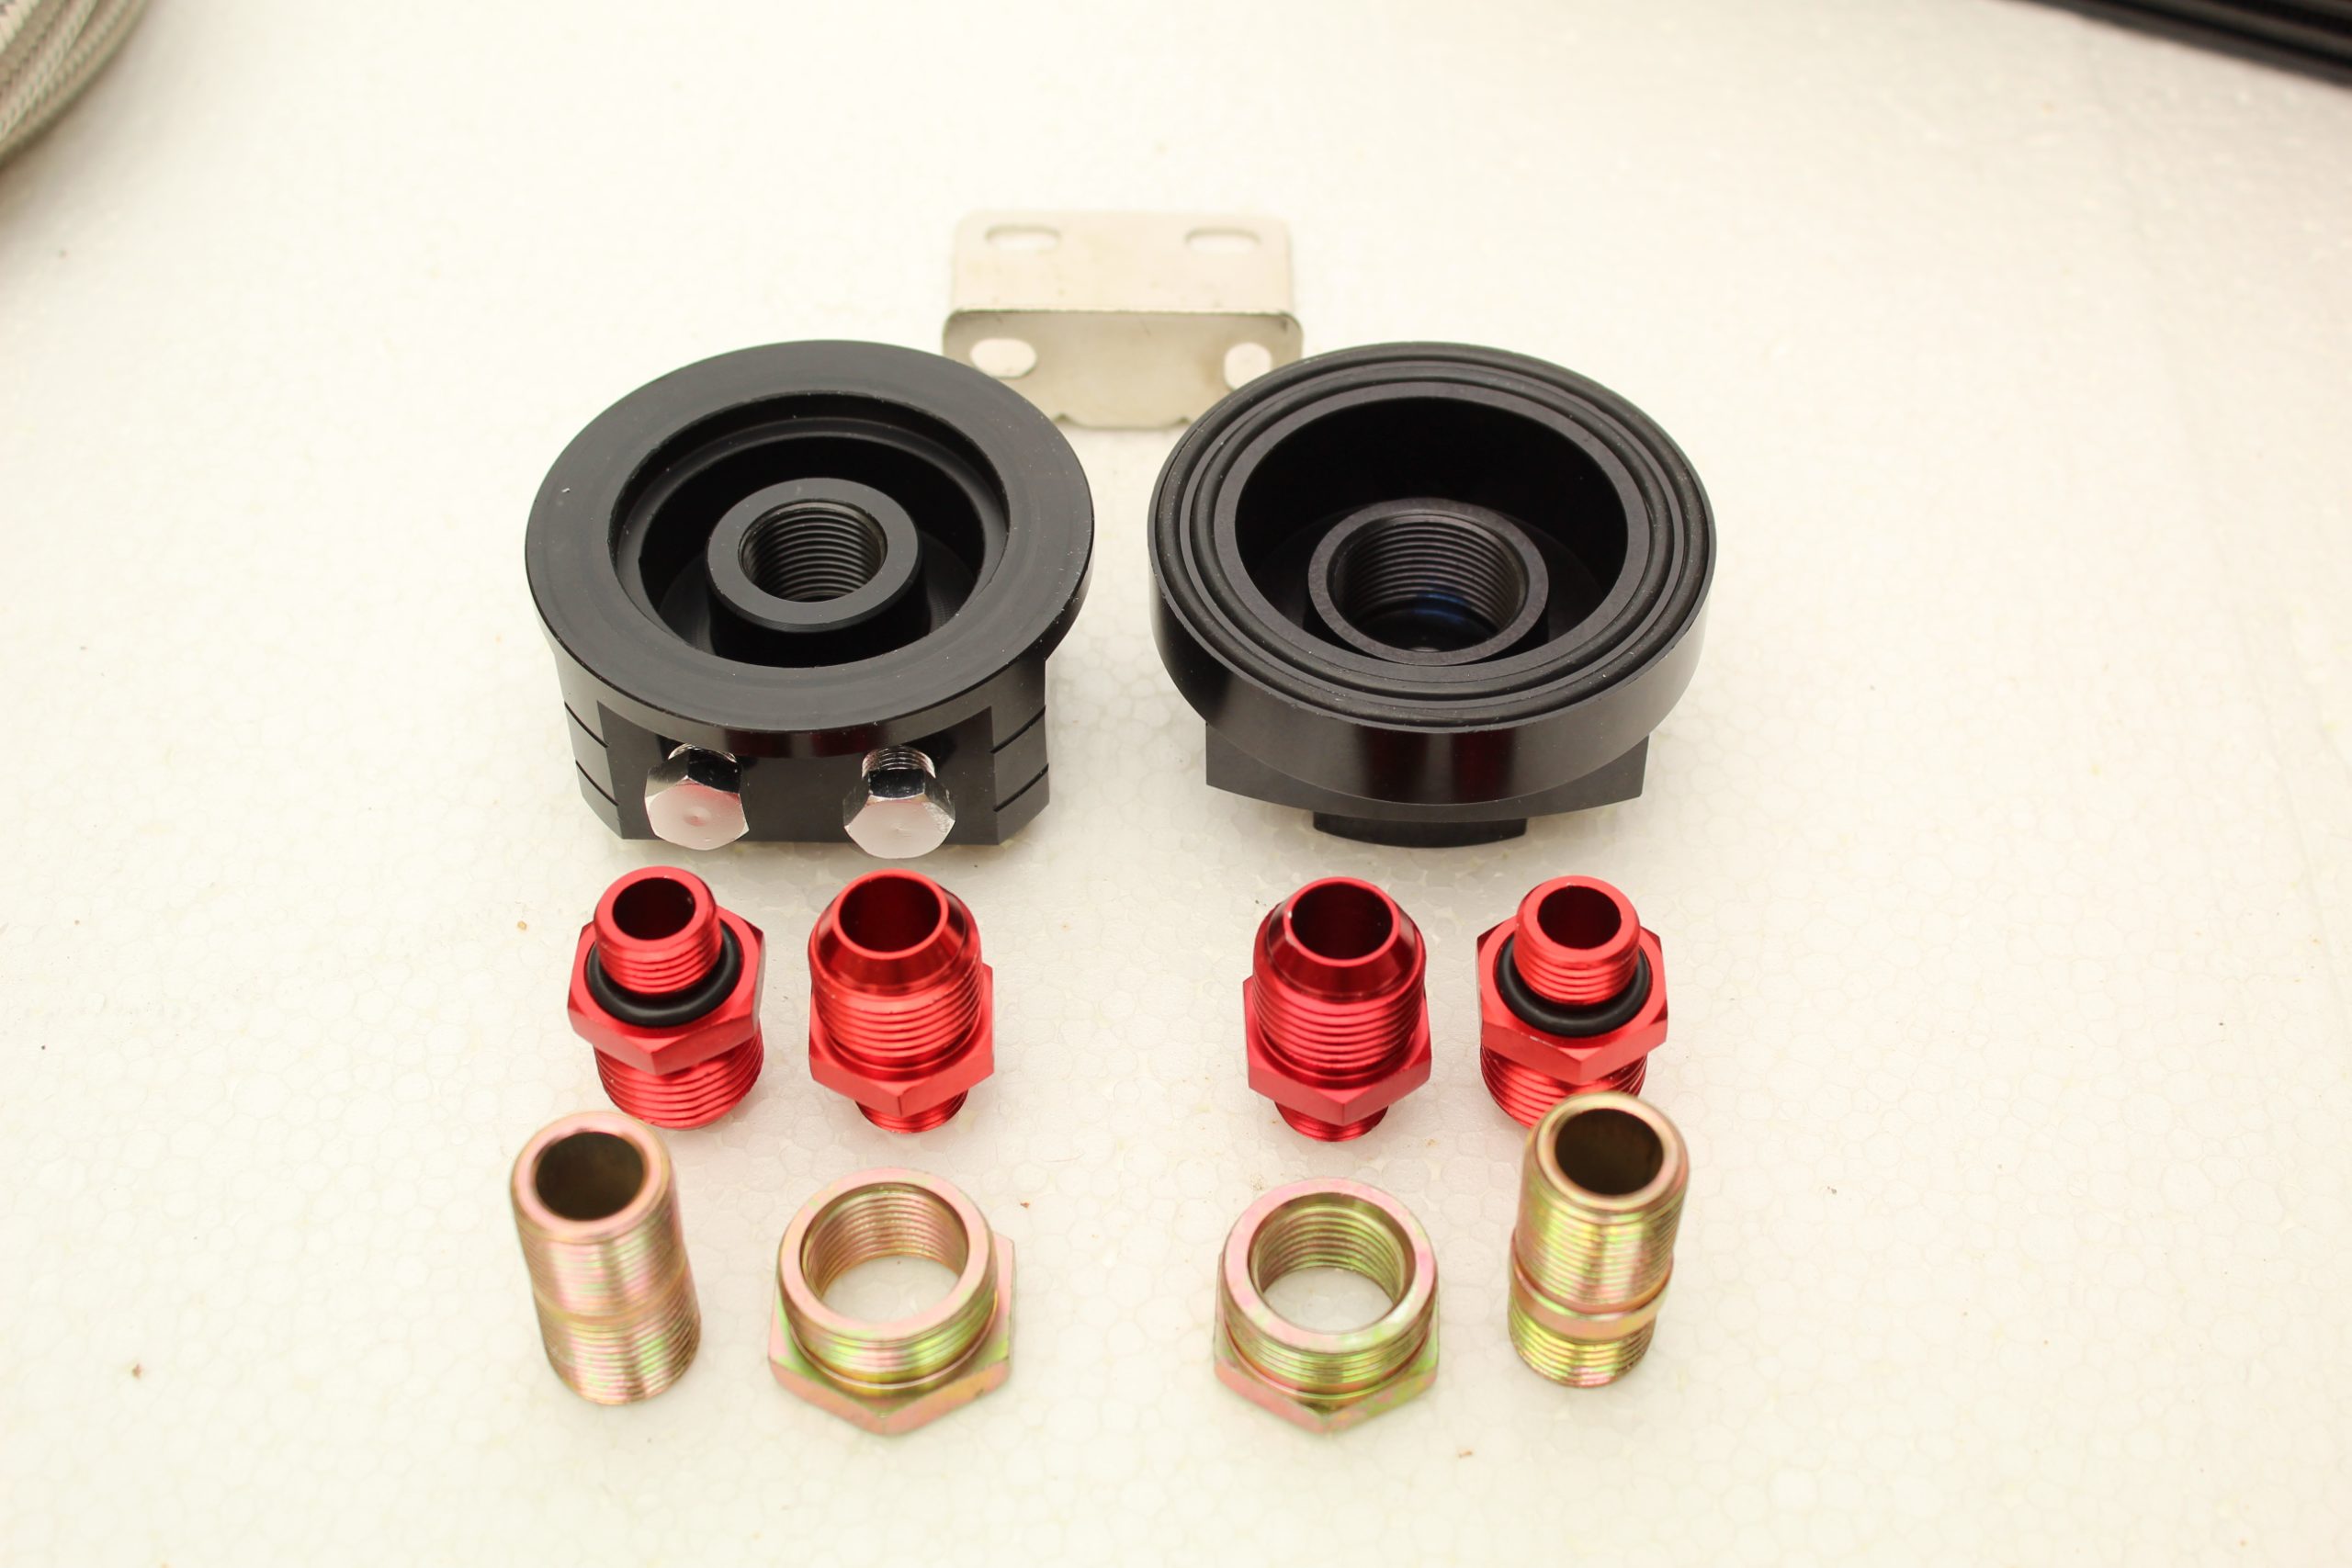 19 Row Oil Filter Relocation Kit + HKS Filter for Mazda MX5 Mk1/2, 1.6 or 1.8